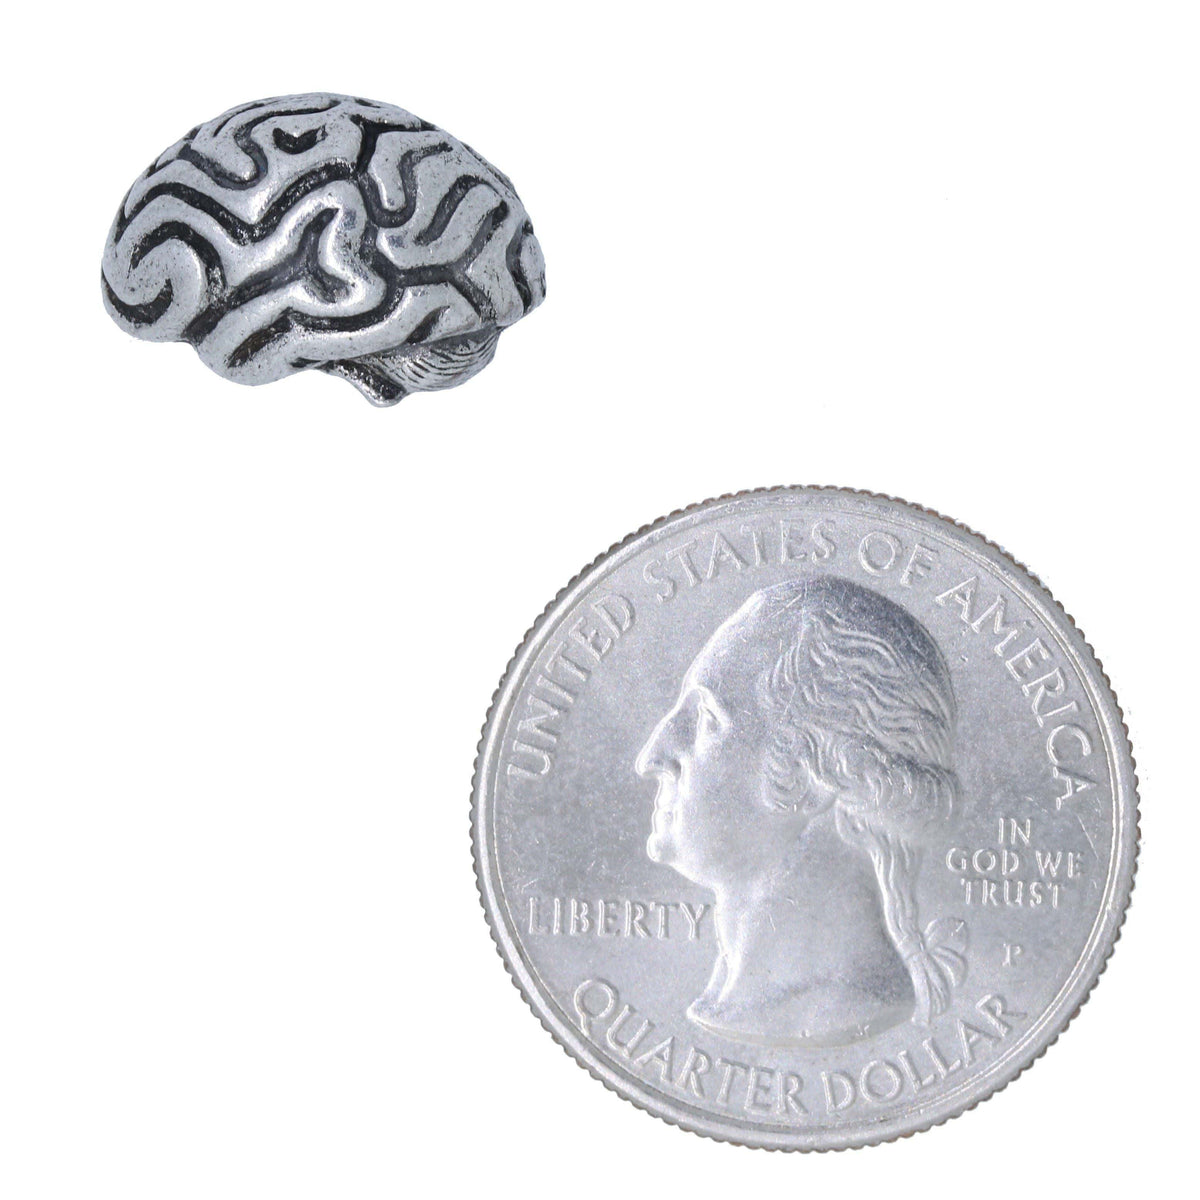 Pin on Big Brain